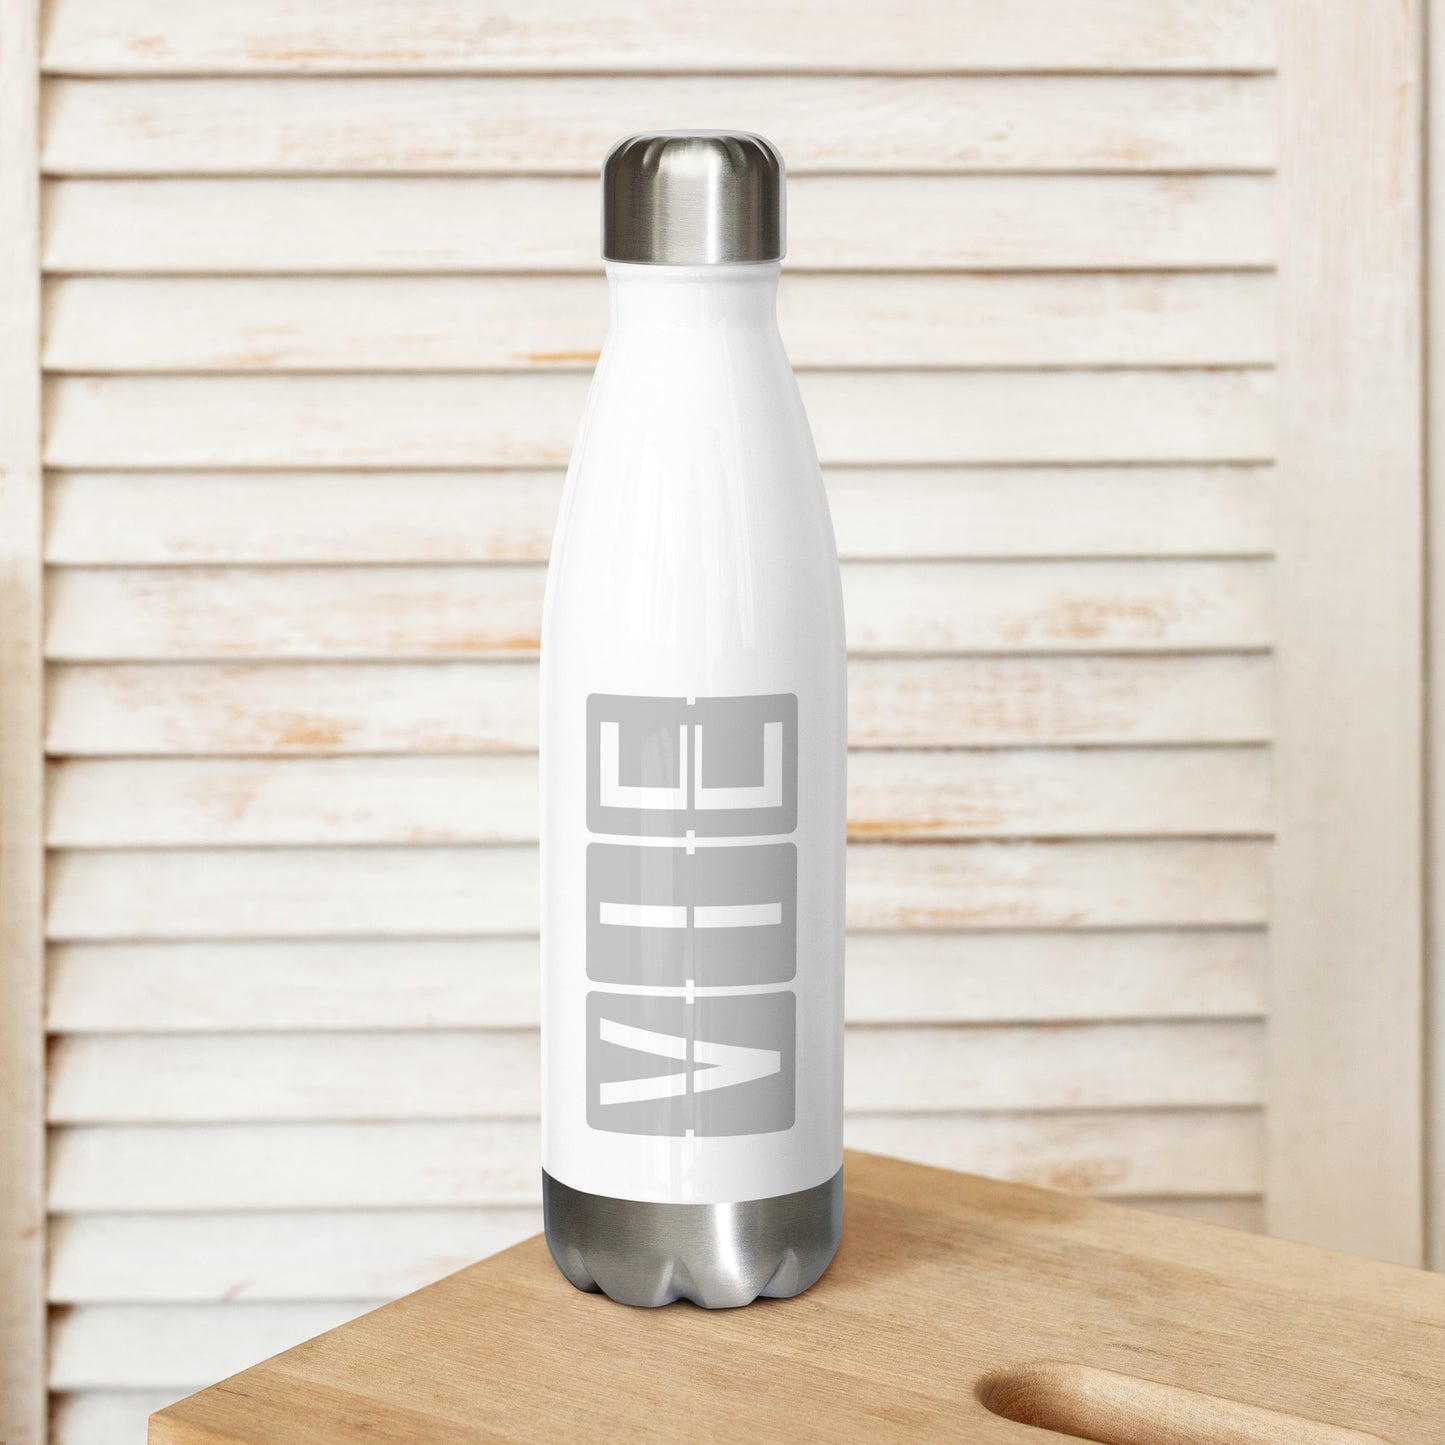 Split-Flap Water Bottle - Grey • VIE Vienna • YHM Designs - Image 02